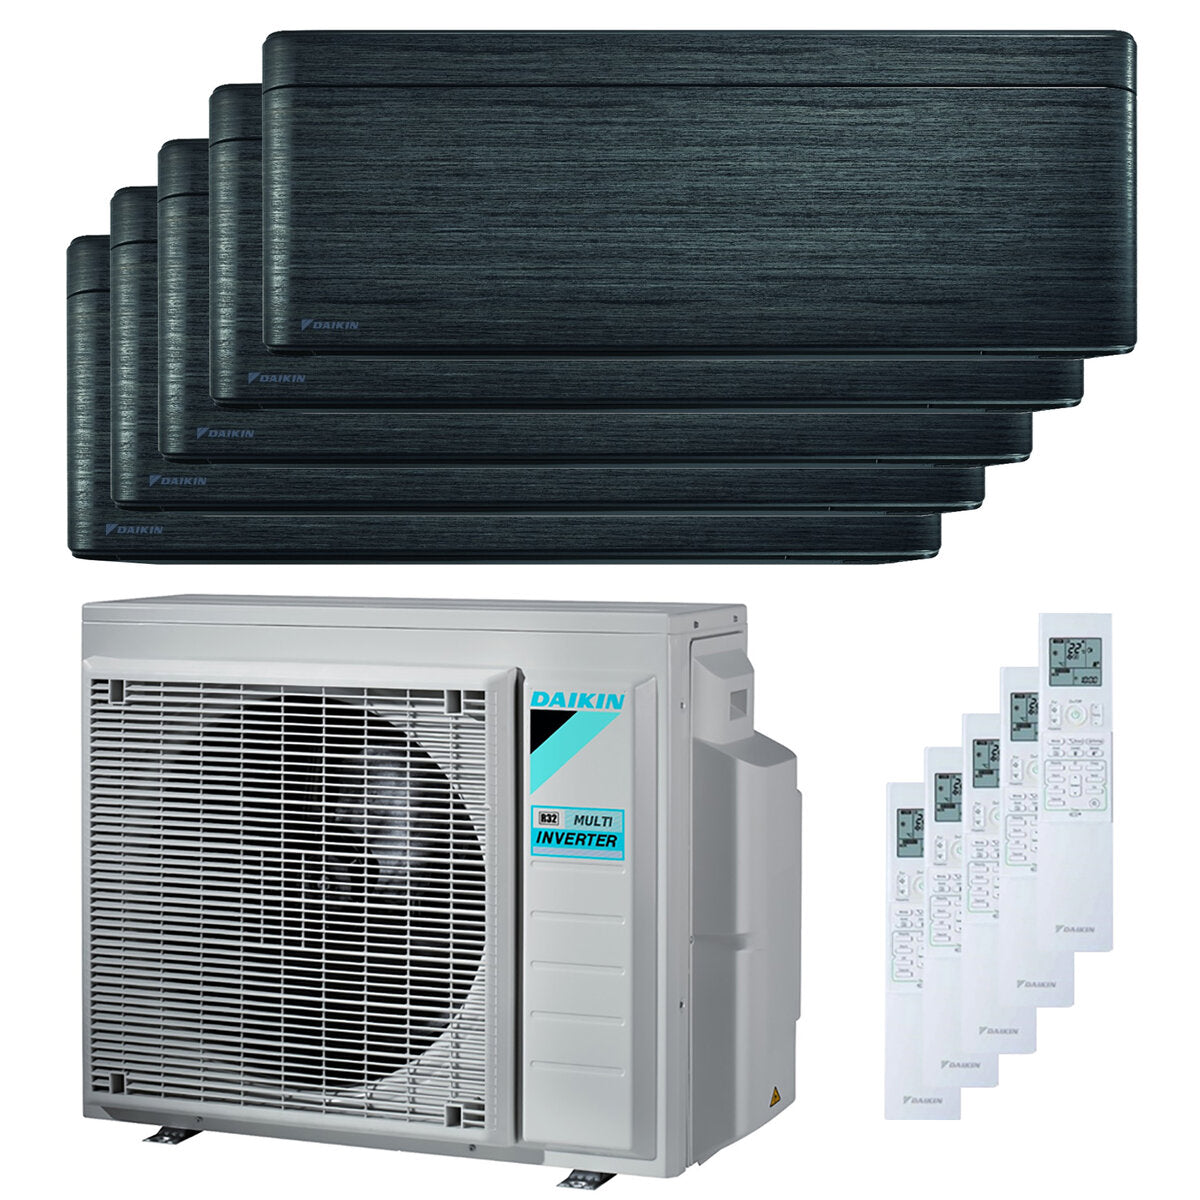 Daikin Stylish air conditioner penta split 7000 + 9000 + 9000 + 9000 + 18000 BTU inverter A ++ wifi outdoor unit 9.0 kW